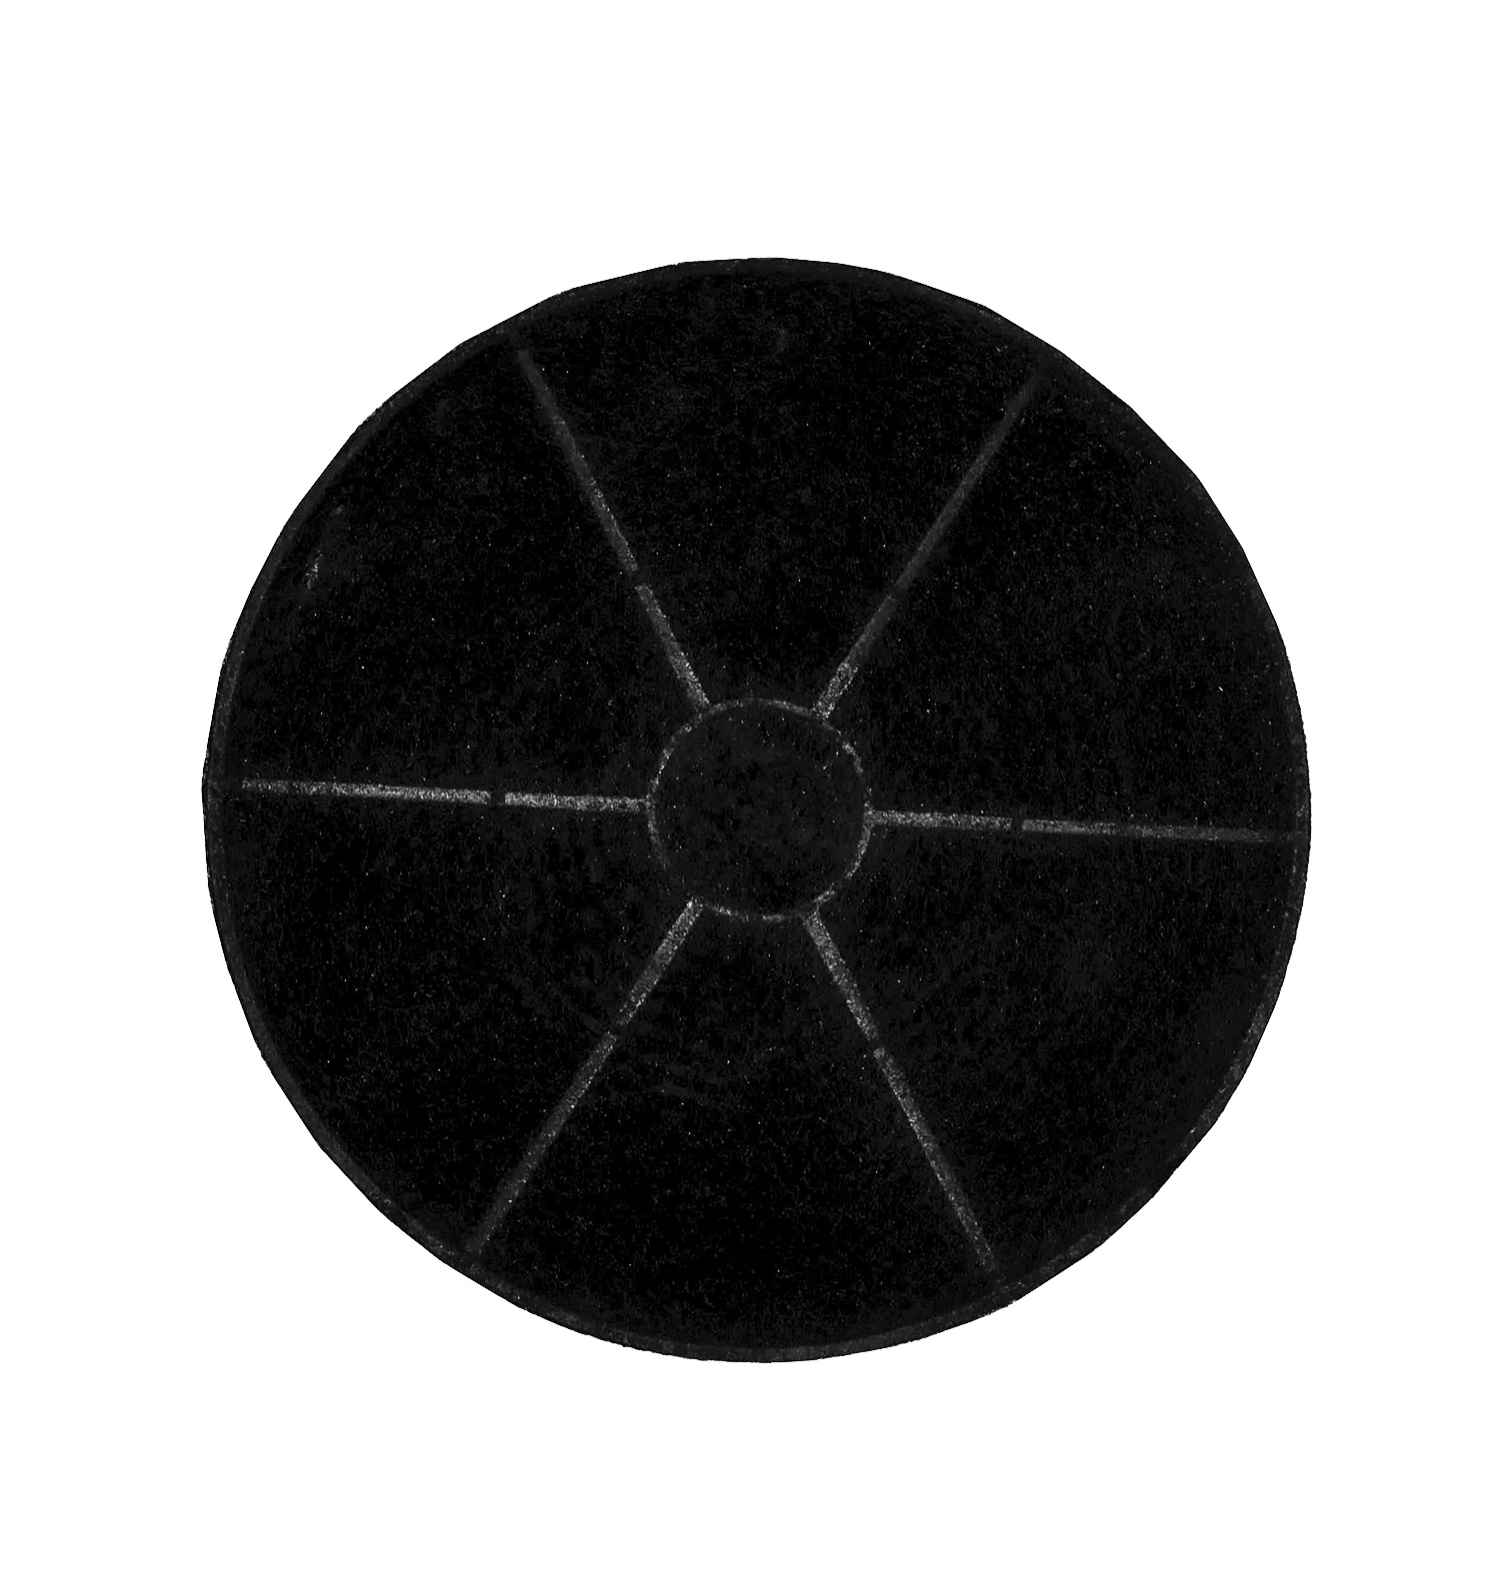 Угольный фильтр для кухонной вытяжки LEX V1